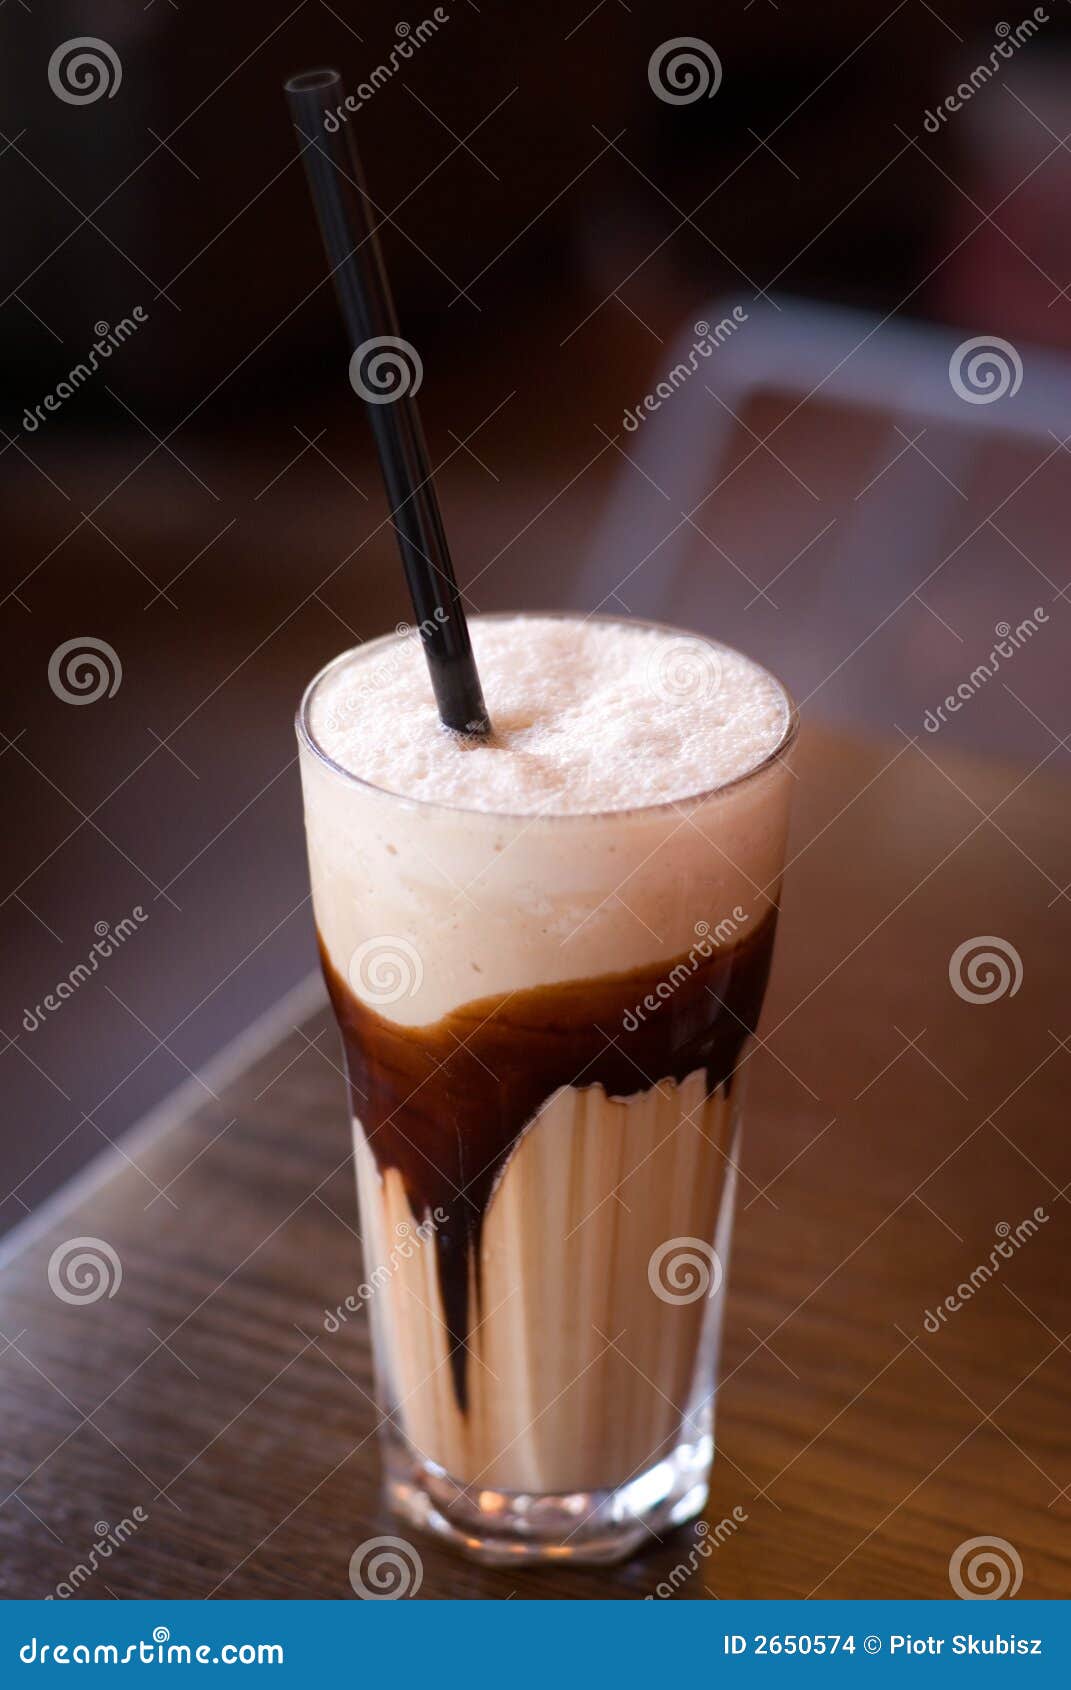 coffee - latte macchiato